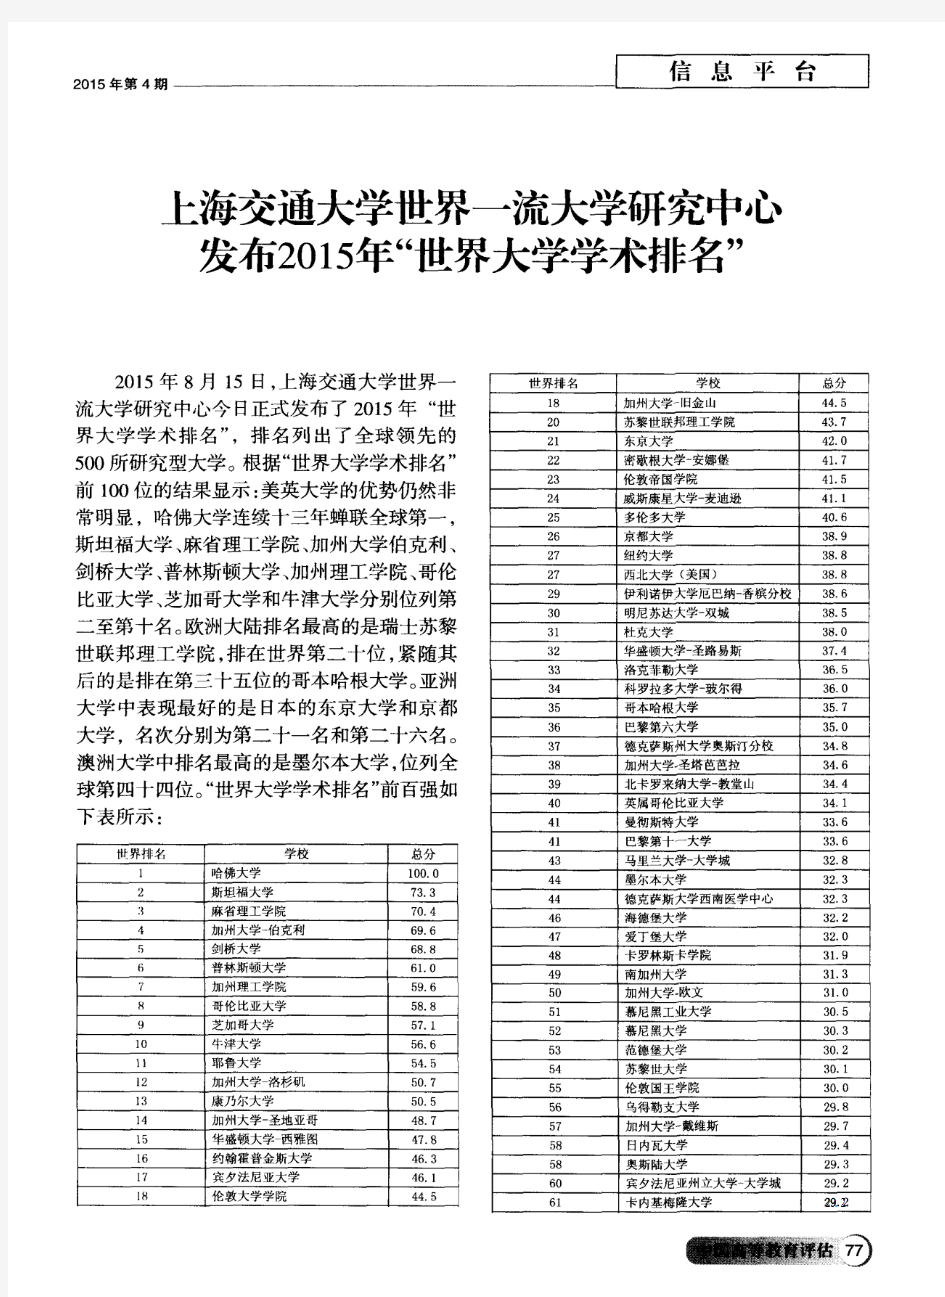 上海交通大学世界一流大学研究中心发布2015年“世界大学学术排名”